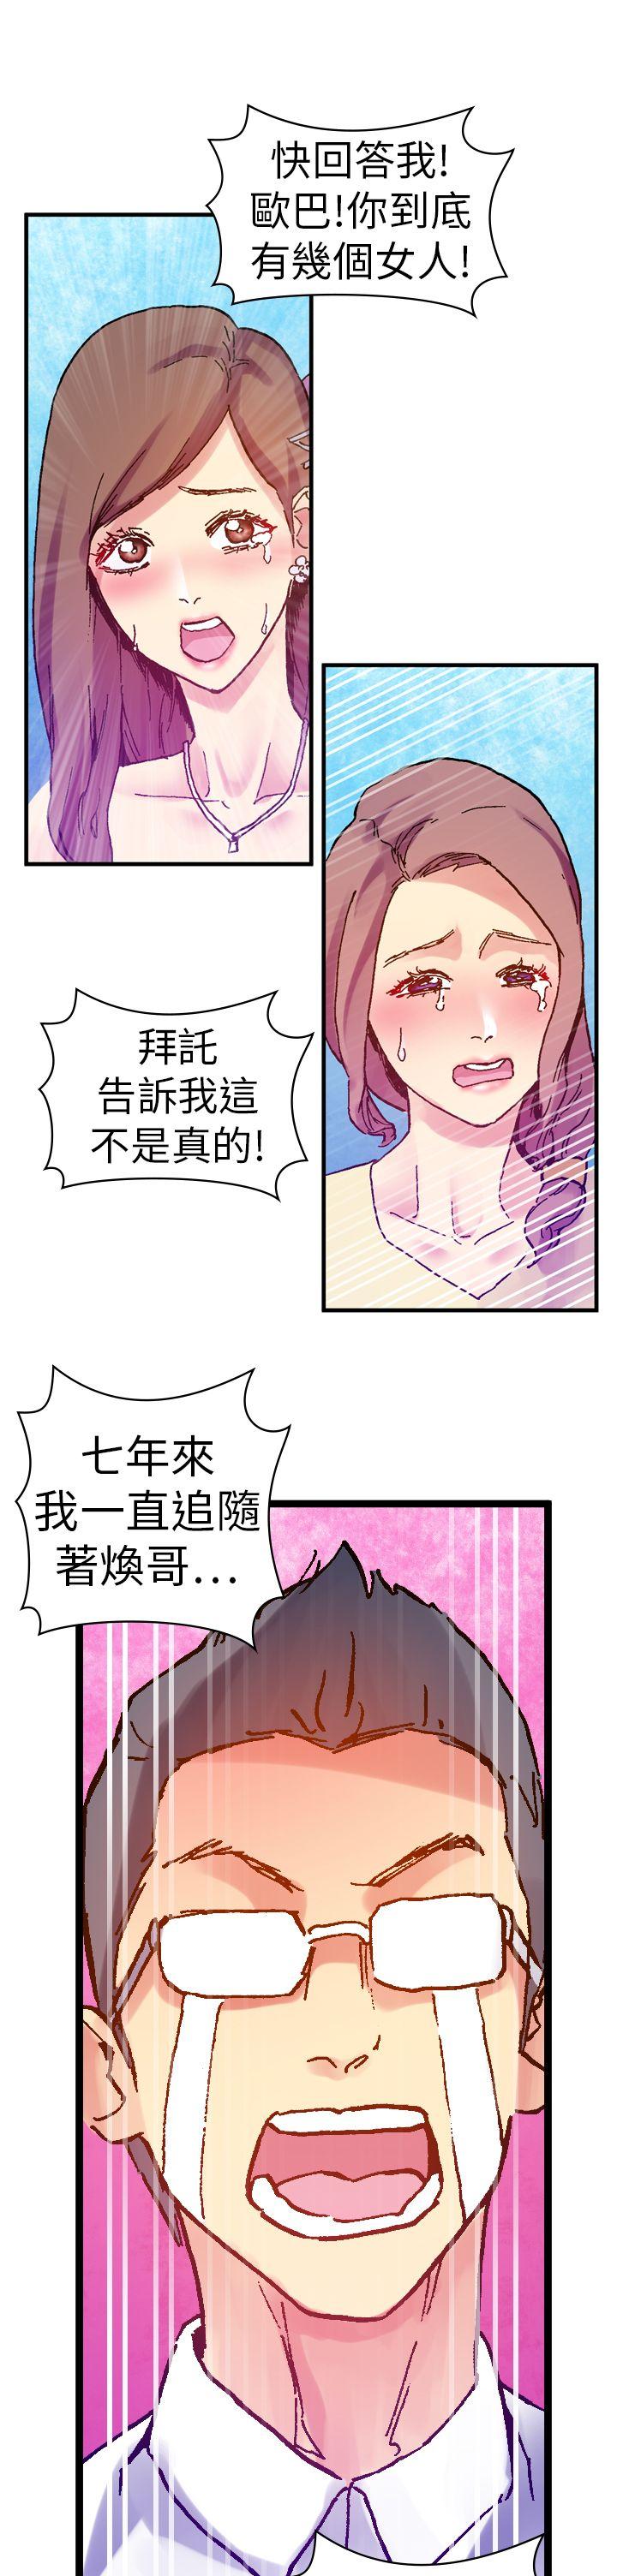 韩国污漫画 幻想中的她(完結) 第13话 31